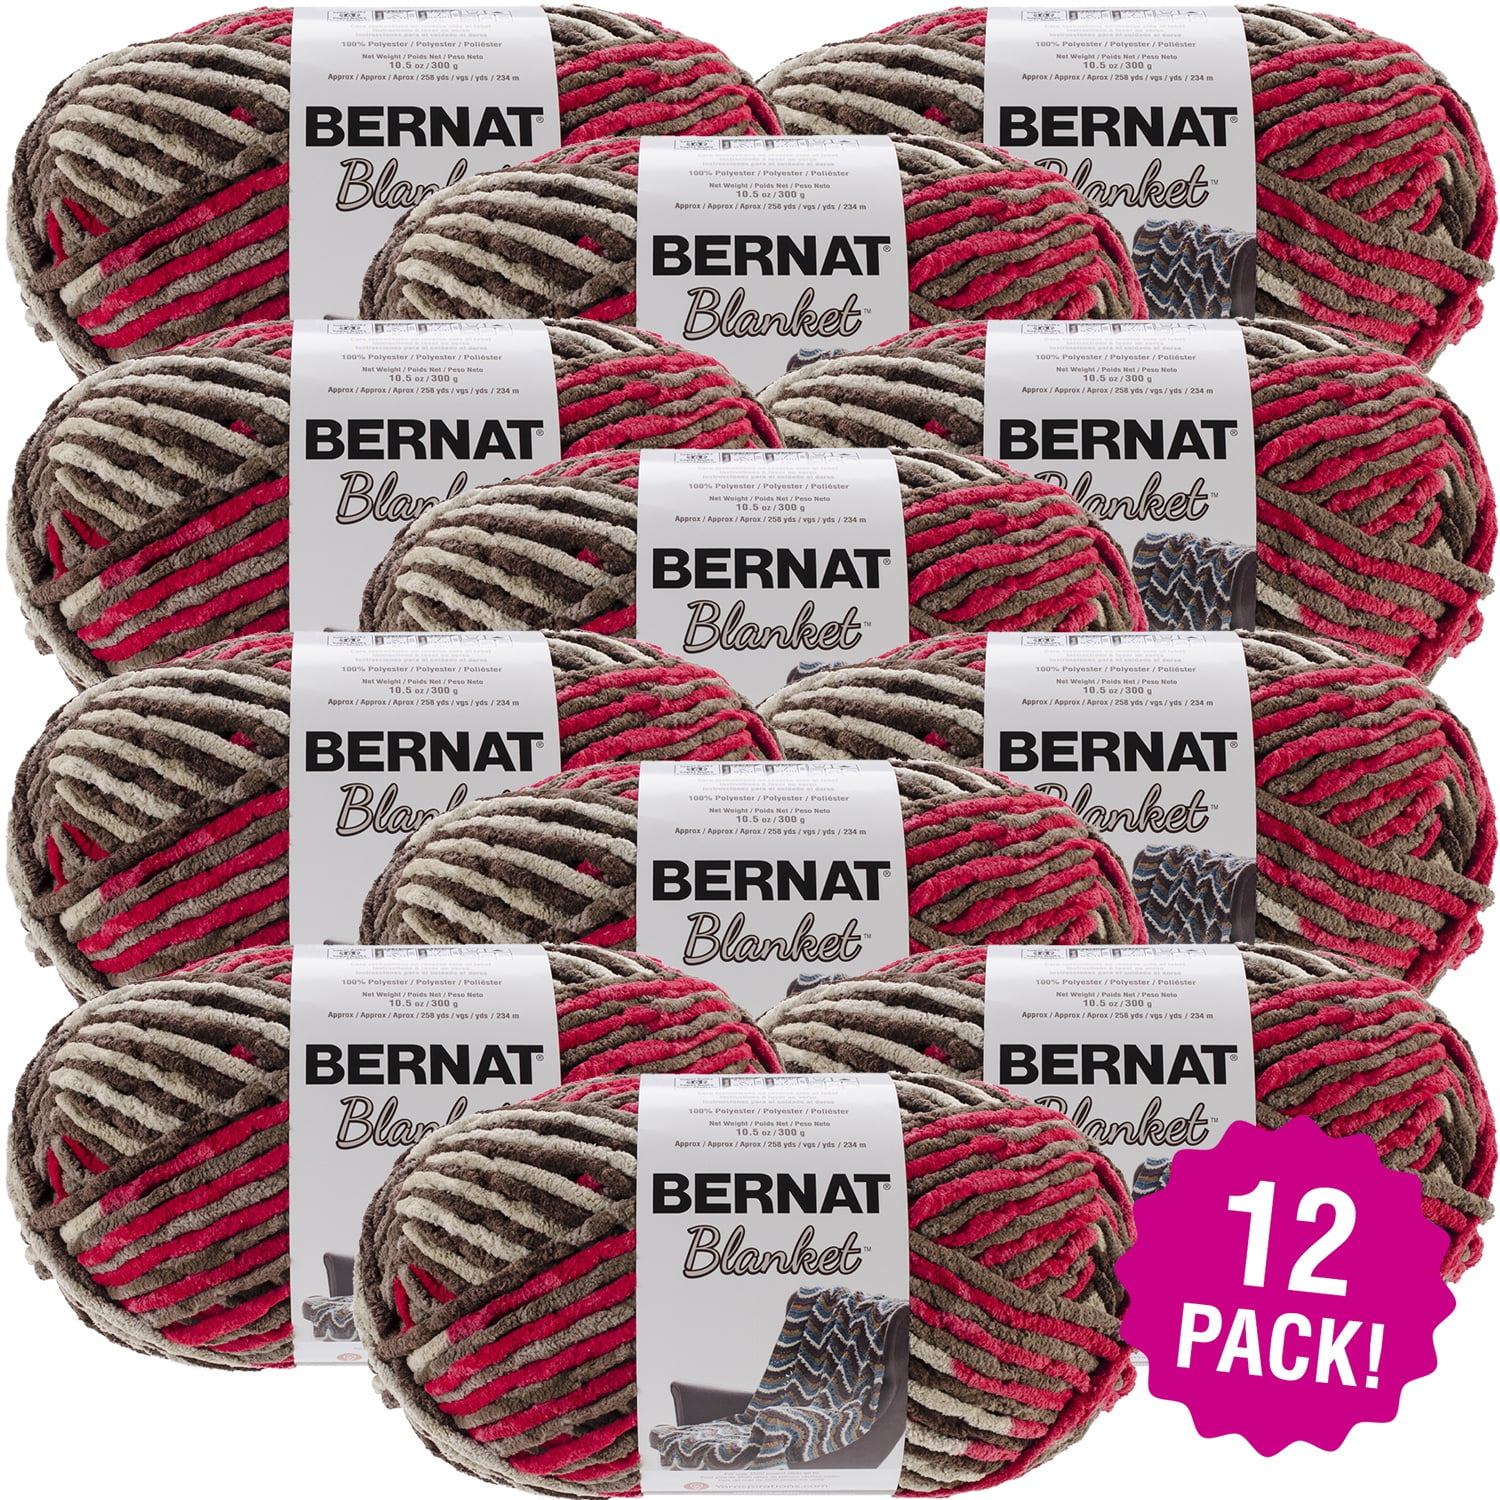 Bernat Blanket Big Ball Yarn - Raspberry Trifle, Multipack of 12 